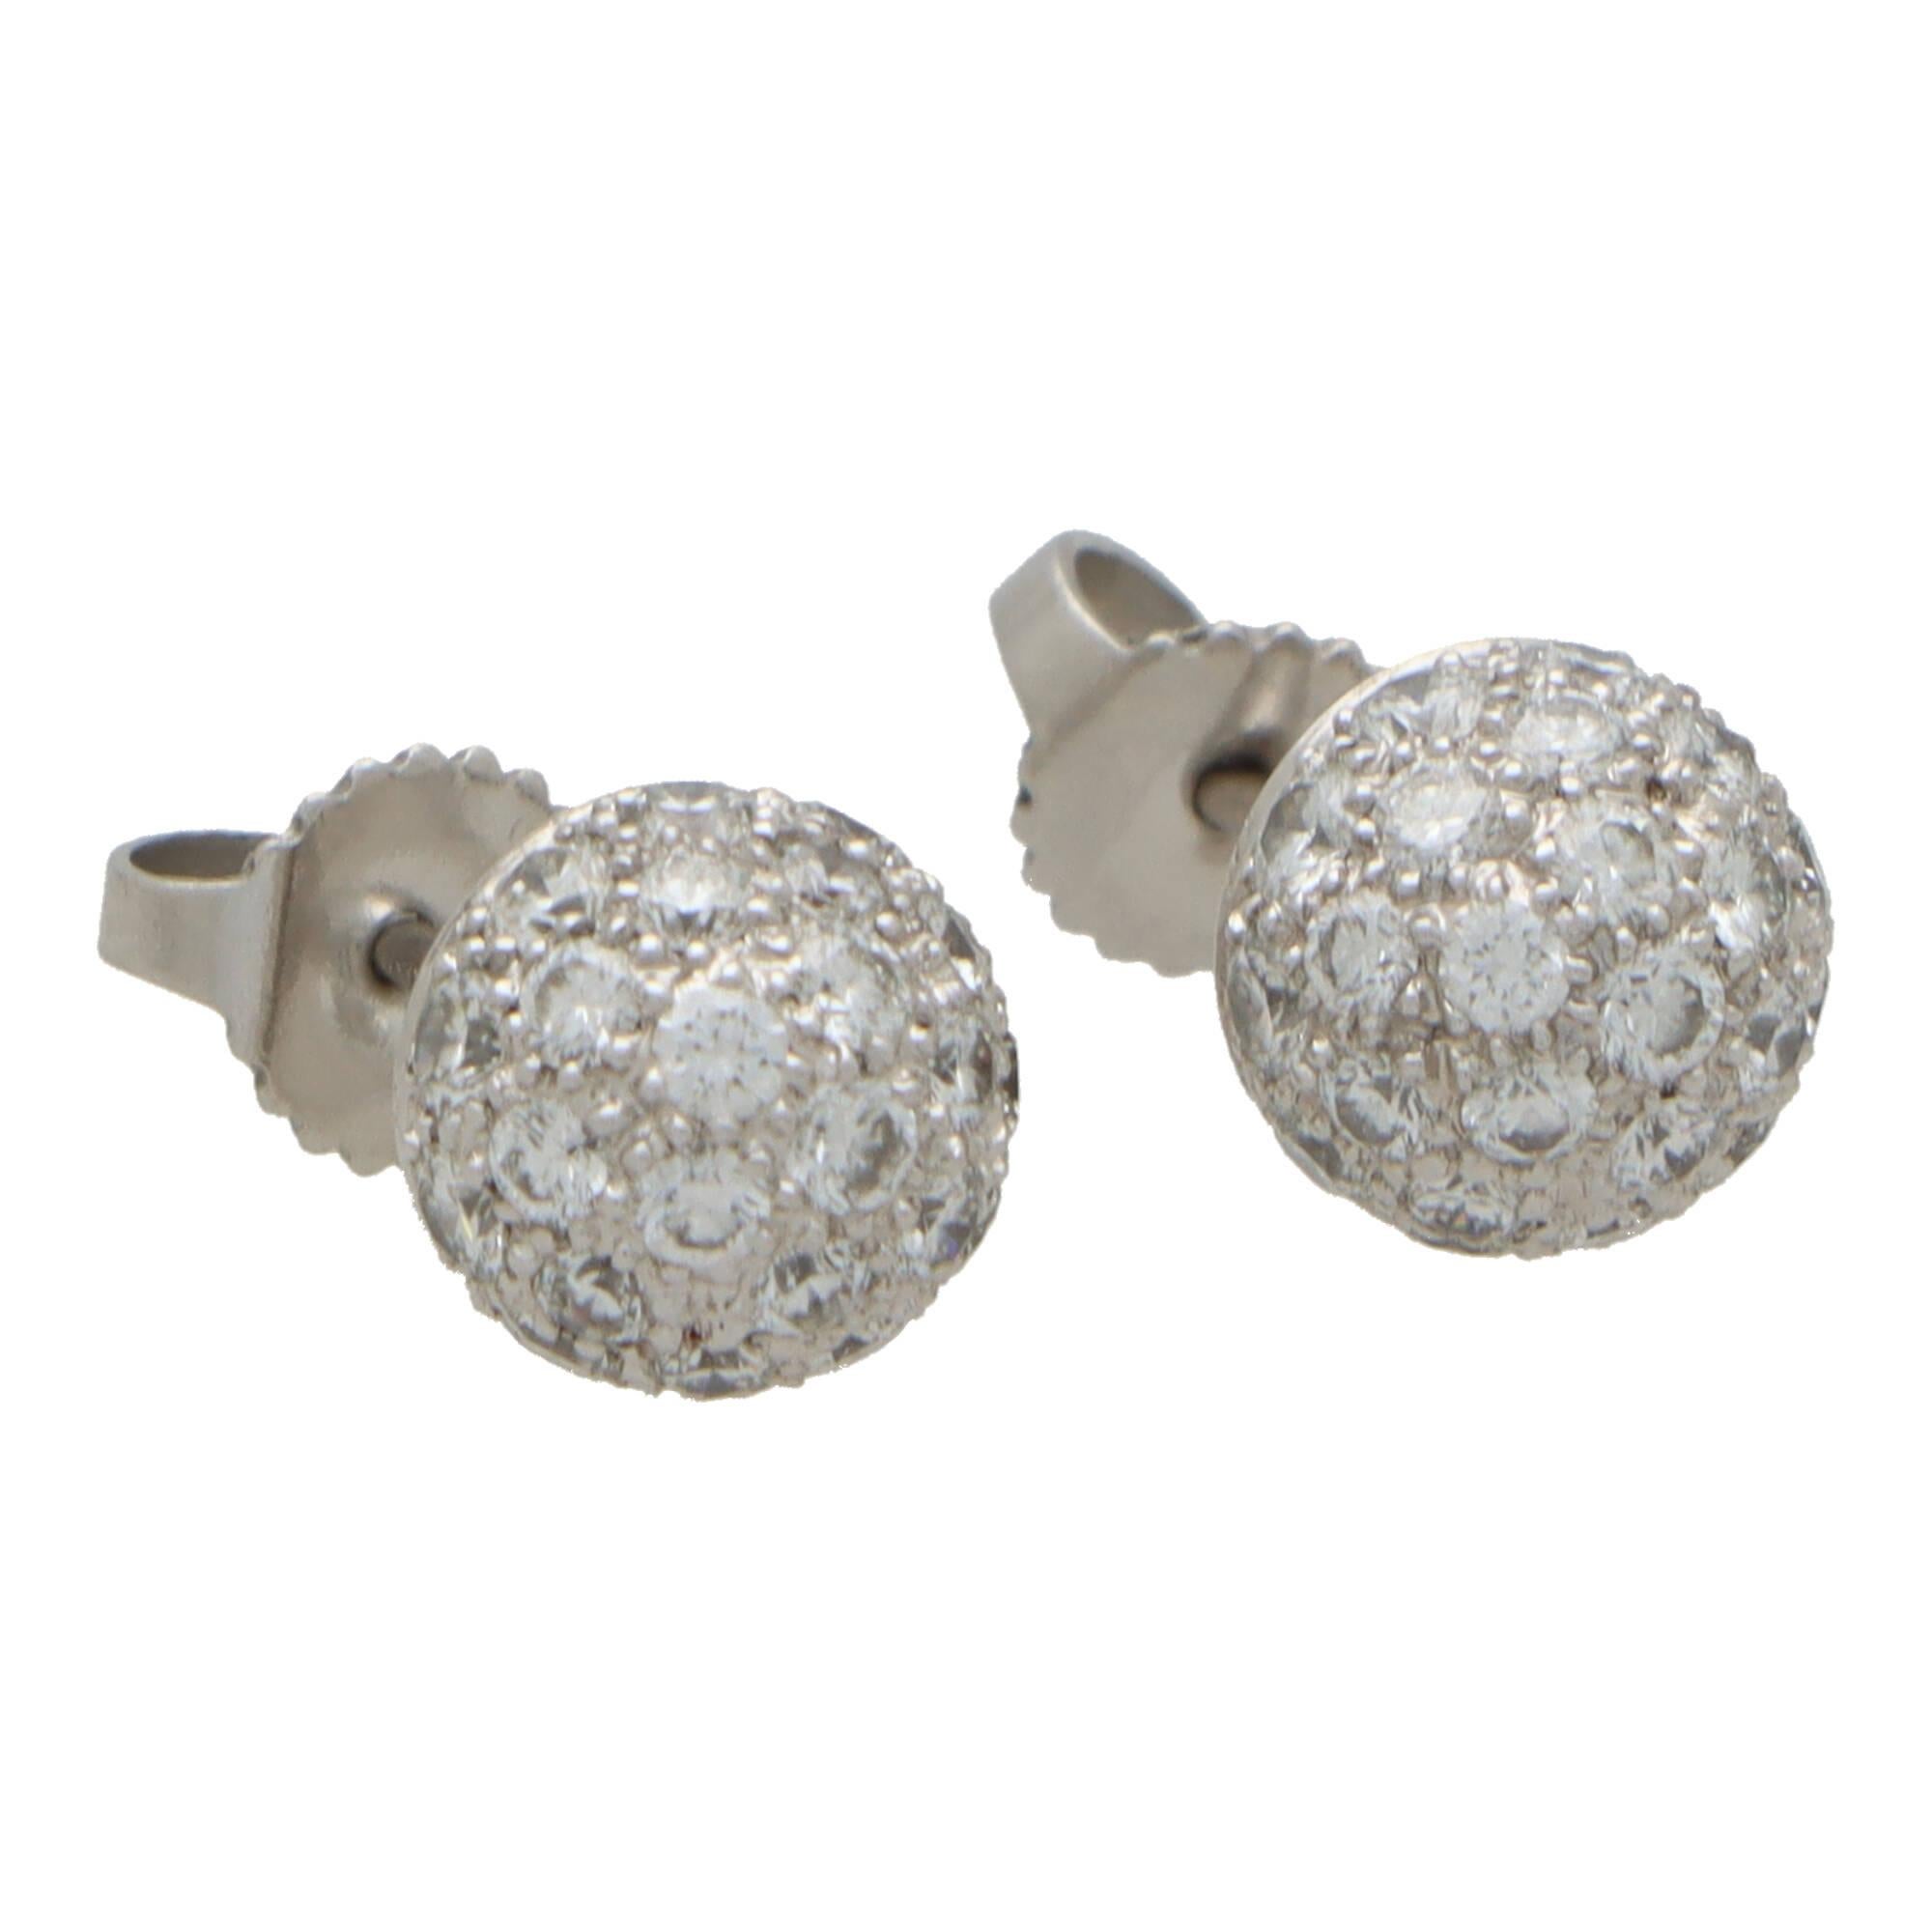 Ein schönes Paar Vintage Tiffany & Co. Diamant-Kugel-Ohrstecker in Platin gesetzt.

Jeder Ohrring der aktuellen Collection'S Etoile besteht aus einer Platin-Kugel, die mit 27 runden Diamanten im Brillantschliff besetzt ist, die nicht mehr erhältlich